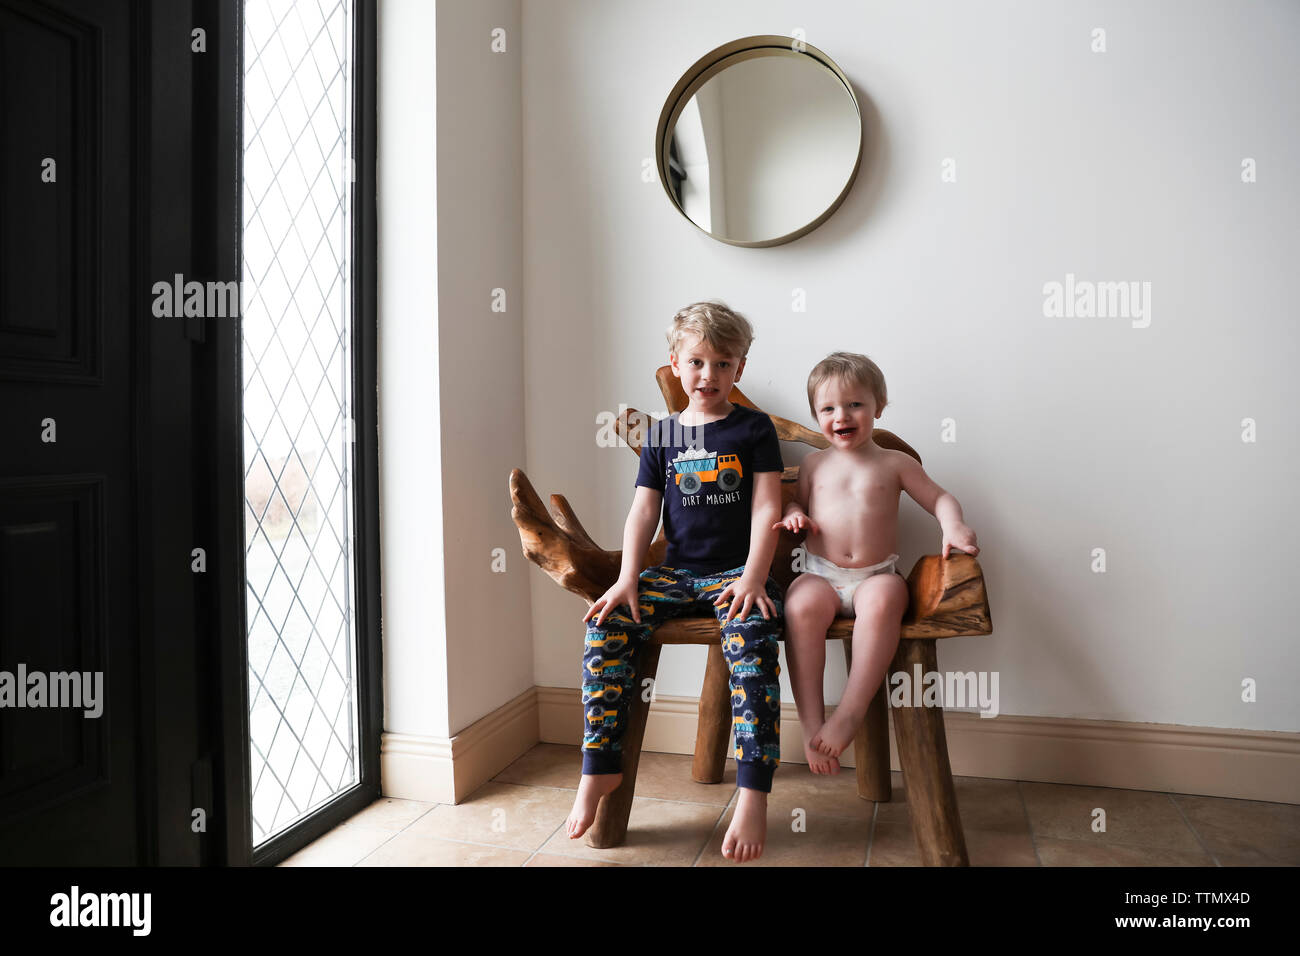 Pigiama fratelli rivestito di sedersi su organici panca di legno accanto alla finestra Foto Stock